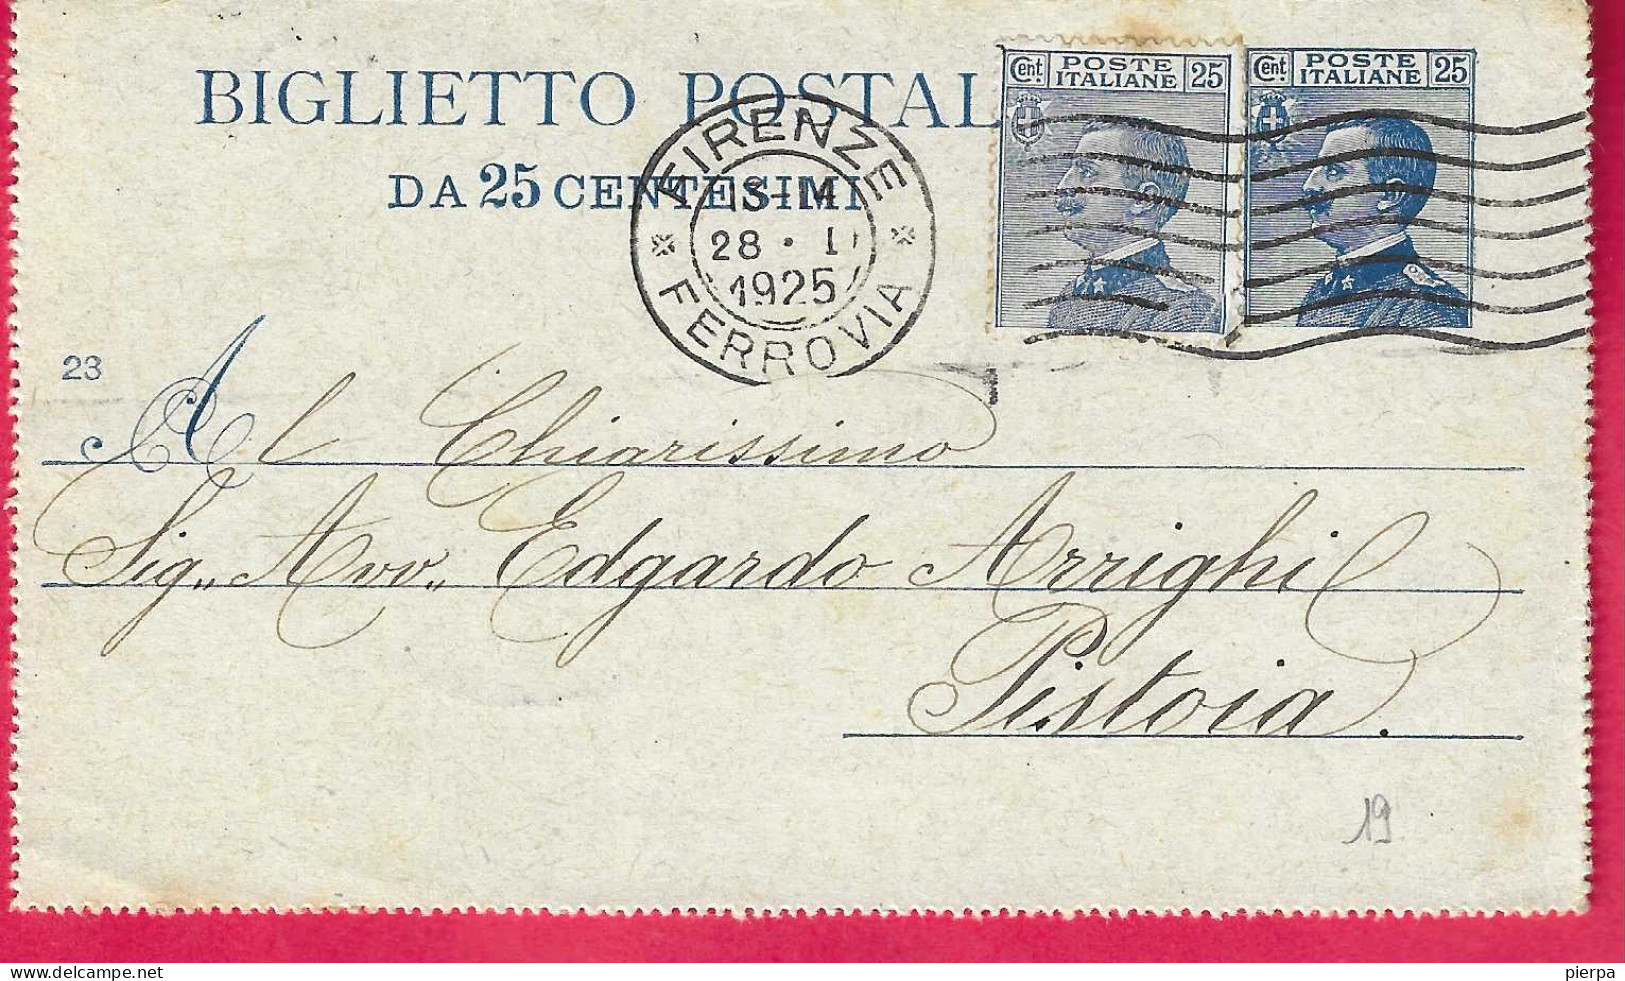 INTERO BIGLIETTO POSTALE MICHETTI C. 25+25 (VALORI GEMELLI) (INT. 19\23) DA FIRENZE *28.1.1925* PER PISTOIA - Entero Postal